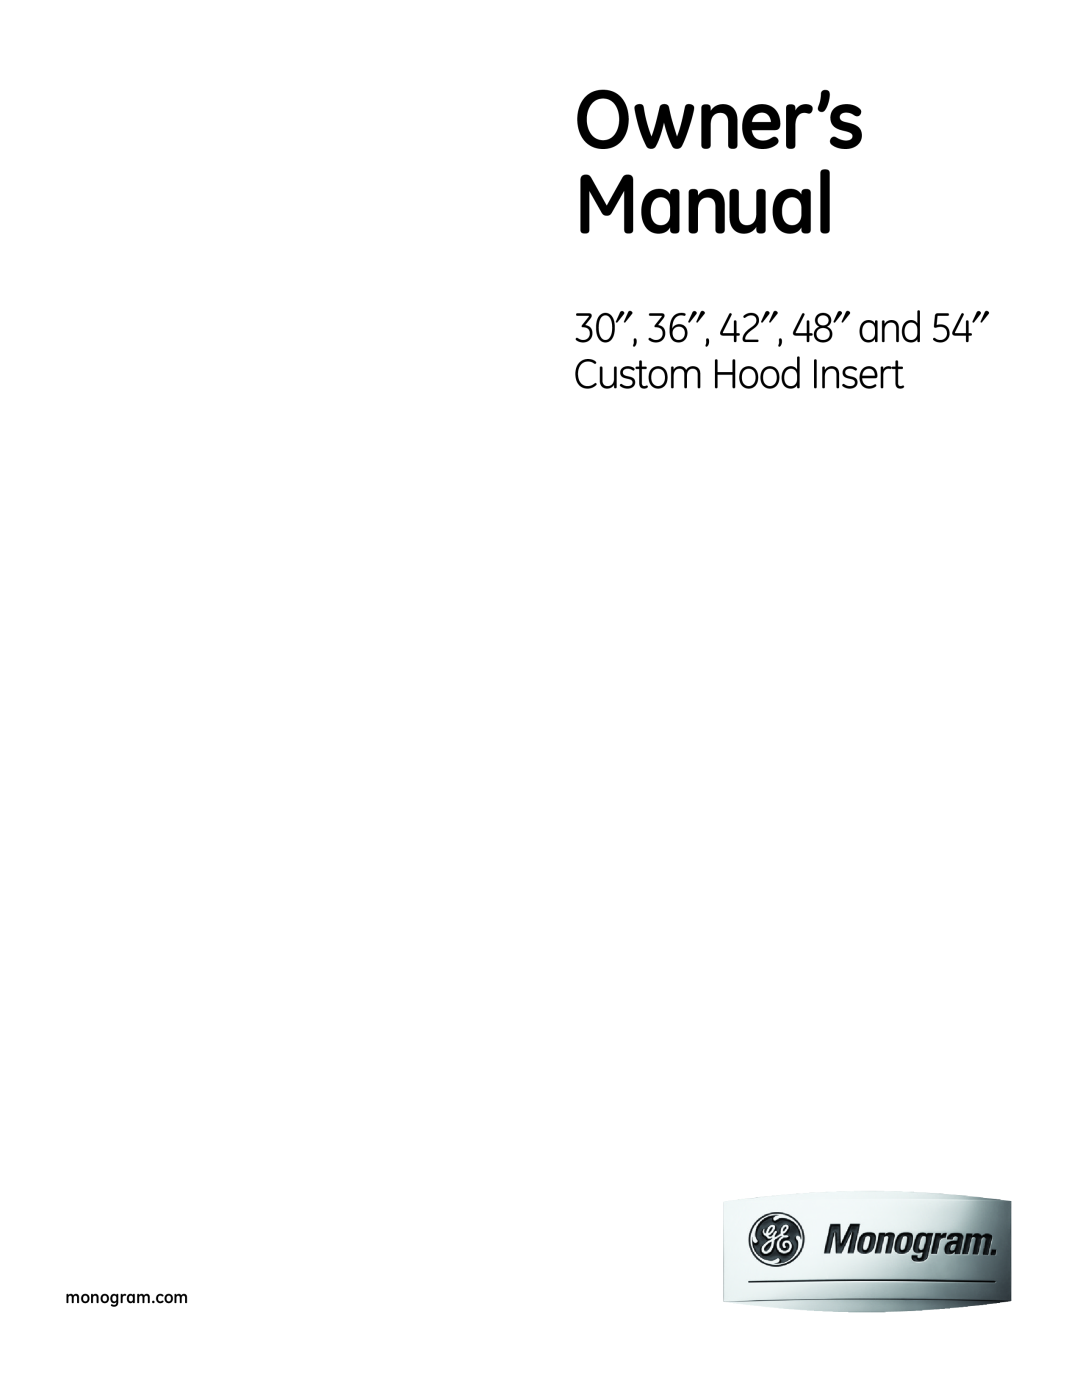 GE 48" and 54 owner manual 30″, 36″, 42″, 48″ and 54″ Custom Hood Insert, monogram.com 